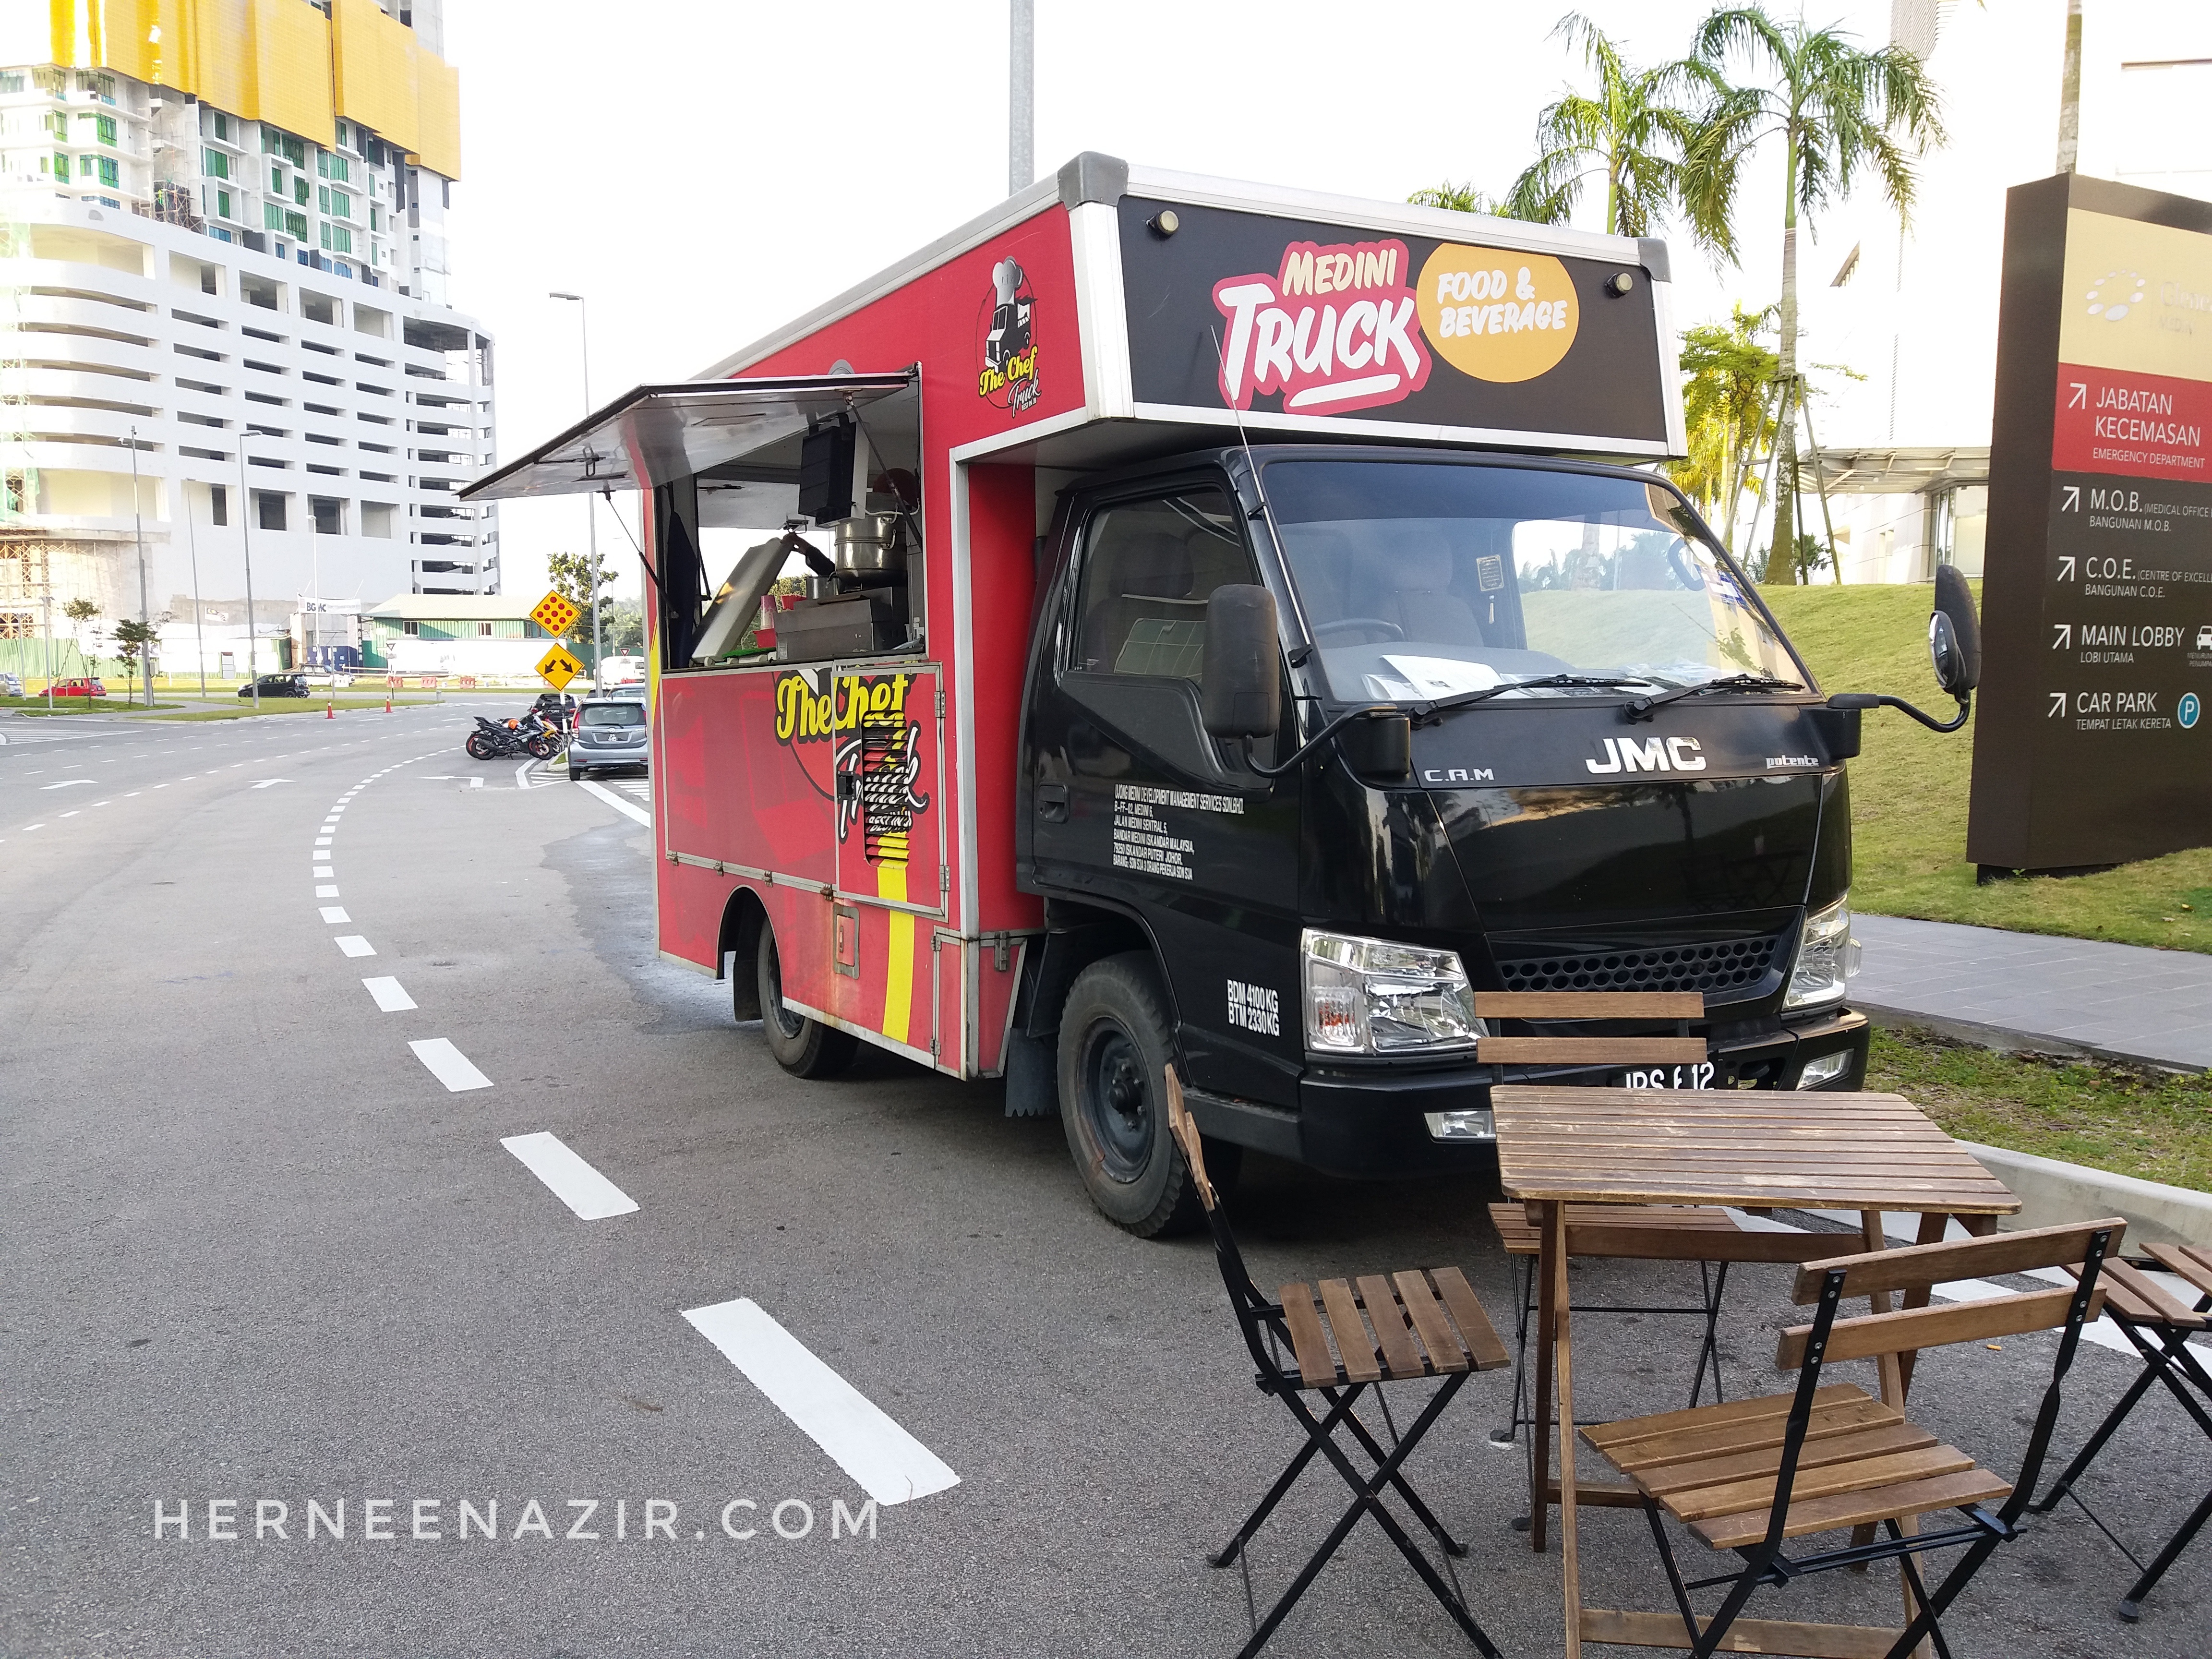 Nasi Lemak & Laksa Sedap Di Medini Food Truck